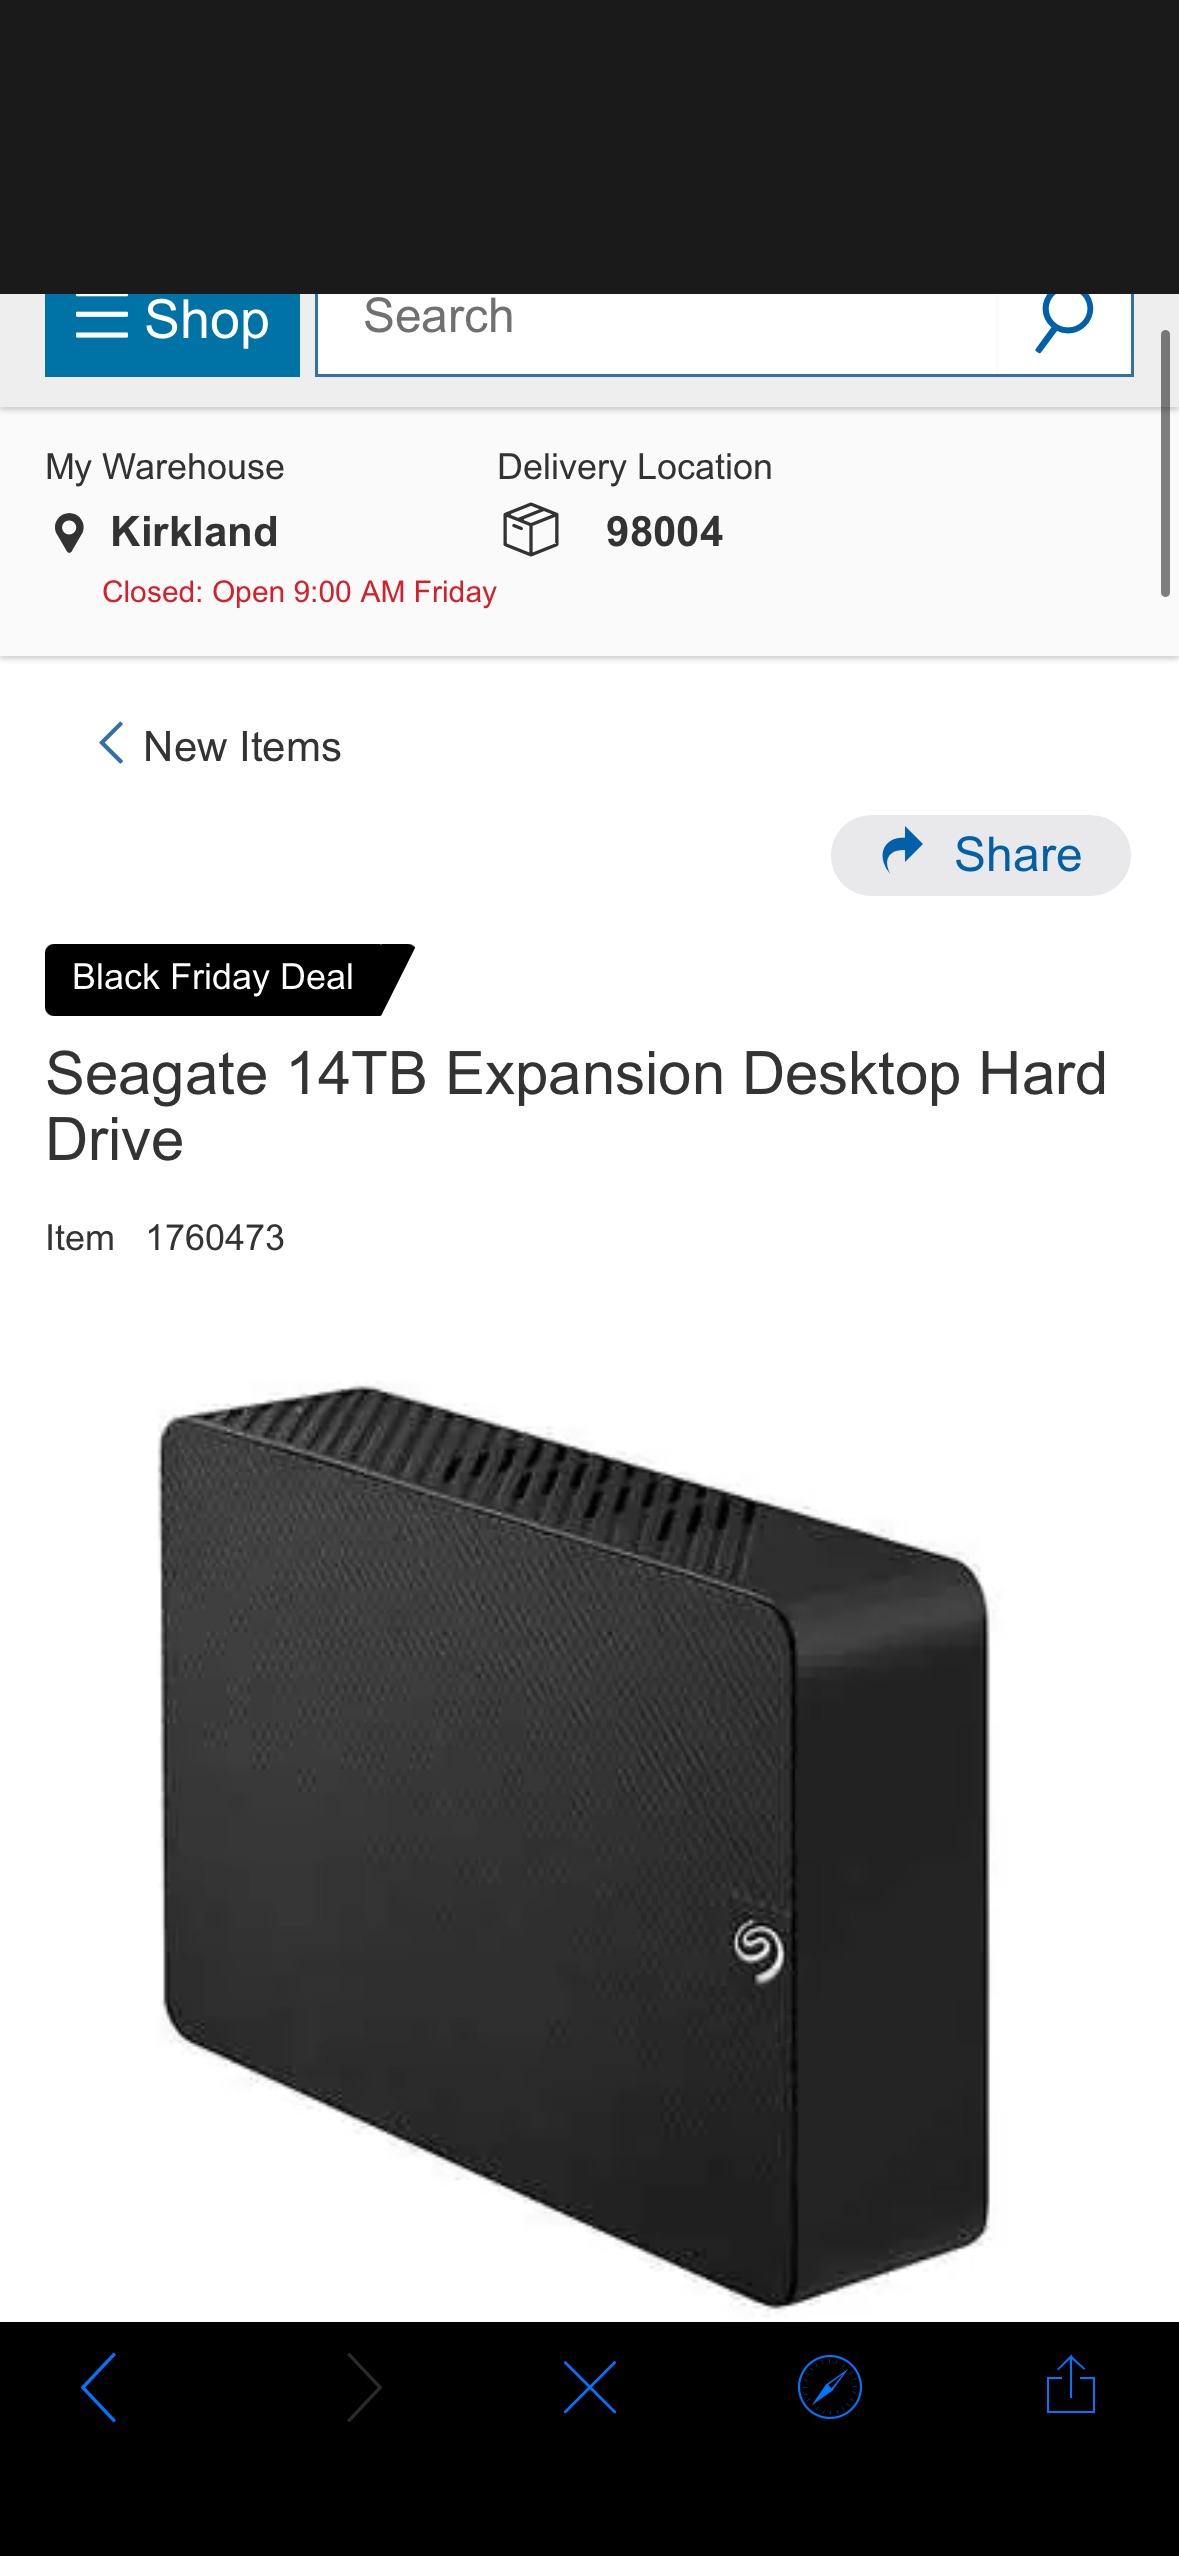 Seagate 14TB Expansion Desktop Hard Drive | Costco